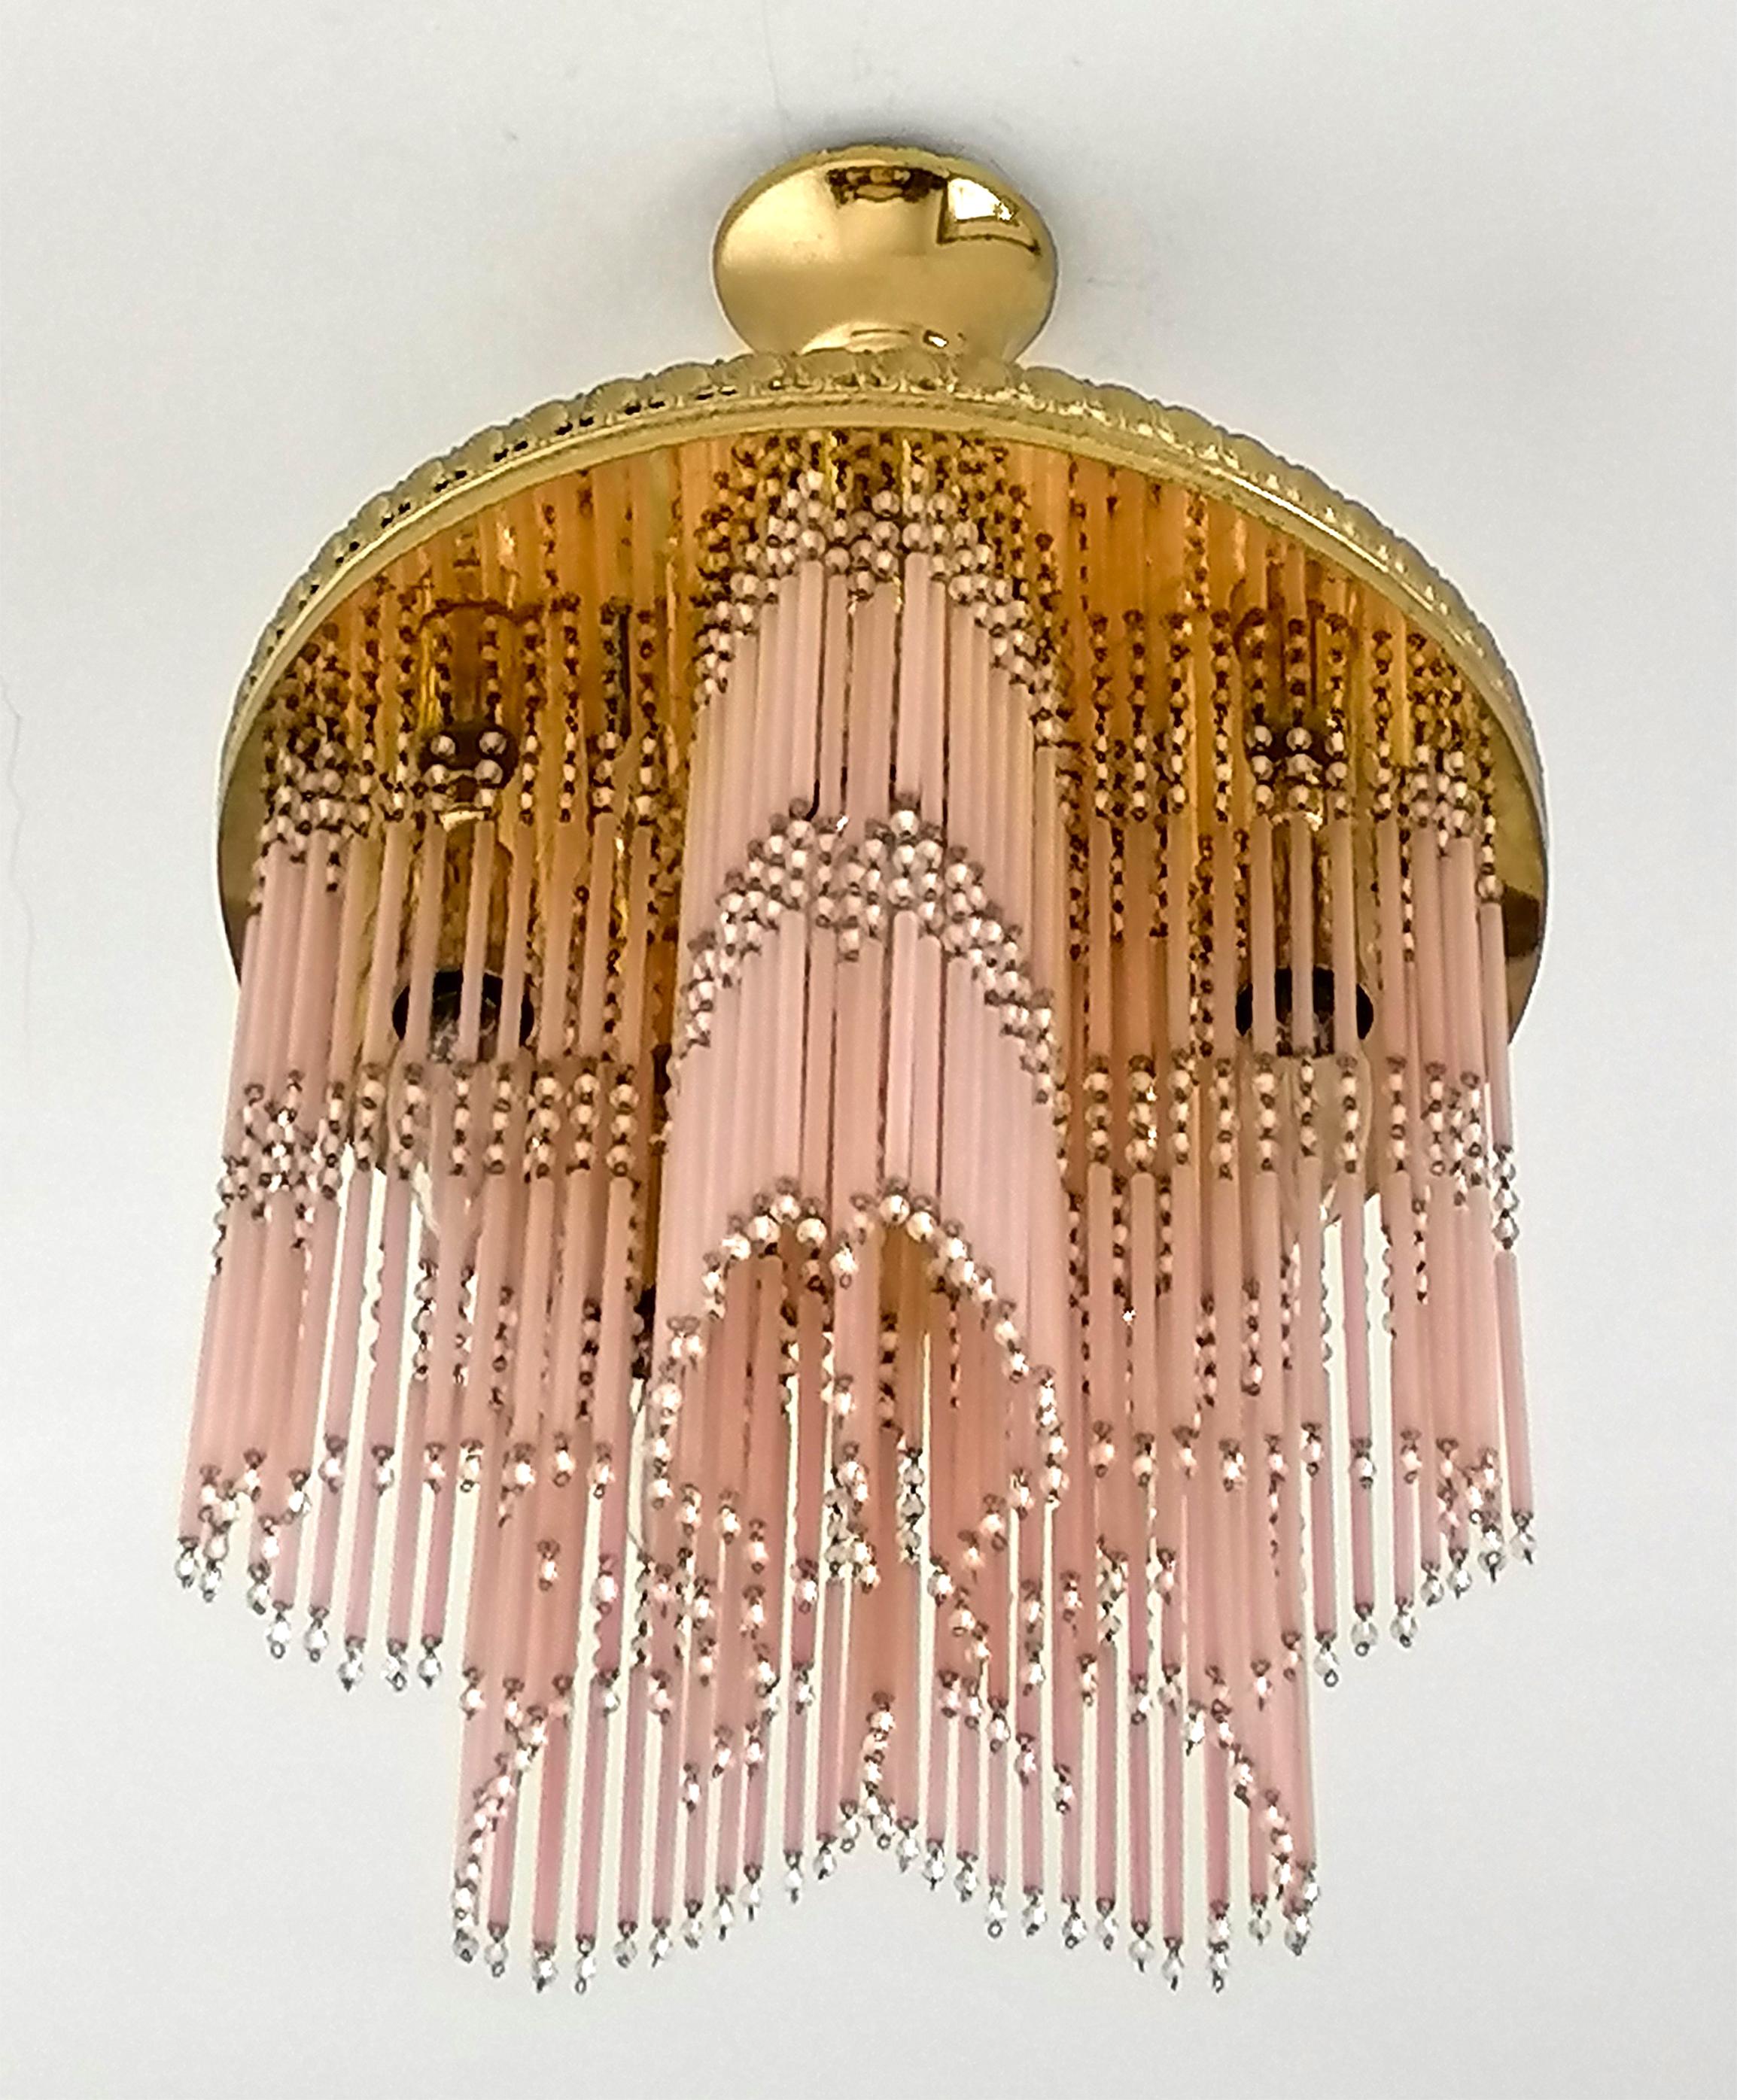 Fabelhafter vergoldeter Hollywood-Regency-Kronleuchter in Form eines Sterns mit Perlenfransen aus rosa Murano-Glas. Aus der Mitte des 20. Jahrhunderts. Wunderschöner Spiegeleffekt. 
Abmessungen:
Durchmesser: 39 cm (15,35 Zoll)
Höhe: 53 cm / 21 Zoll